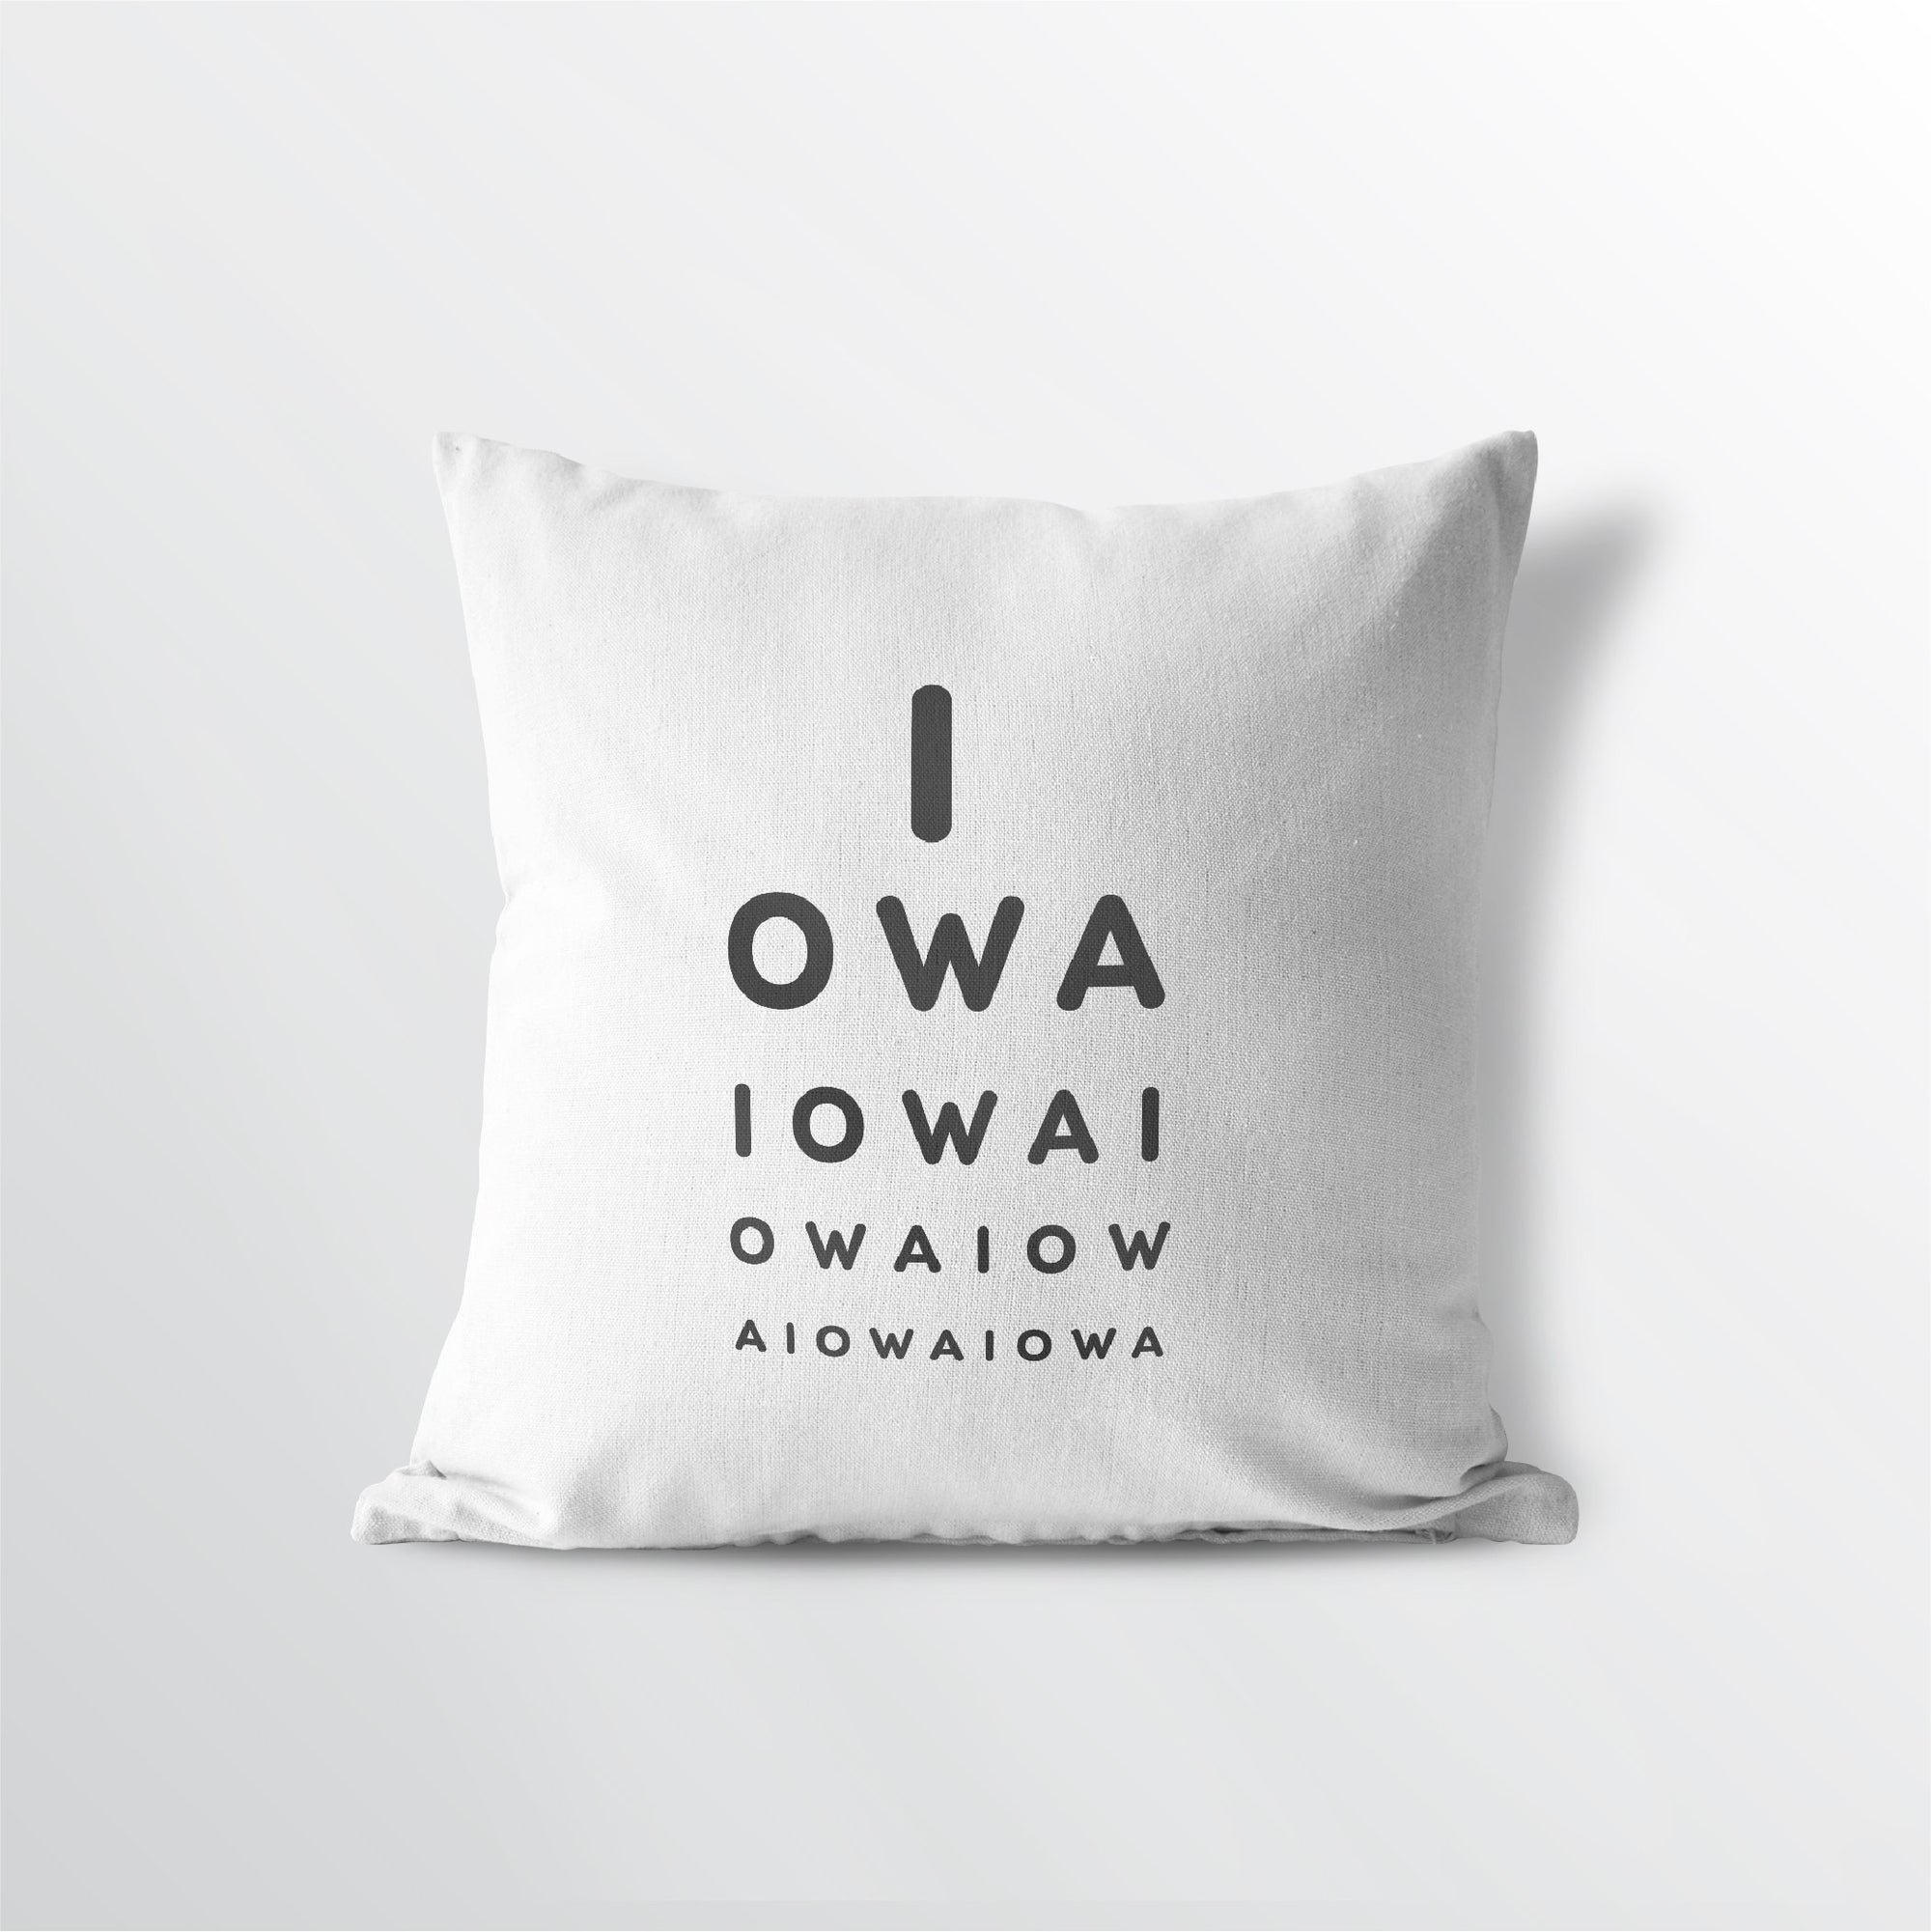 Iowa "Eye Exam" Throw Pillow